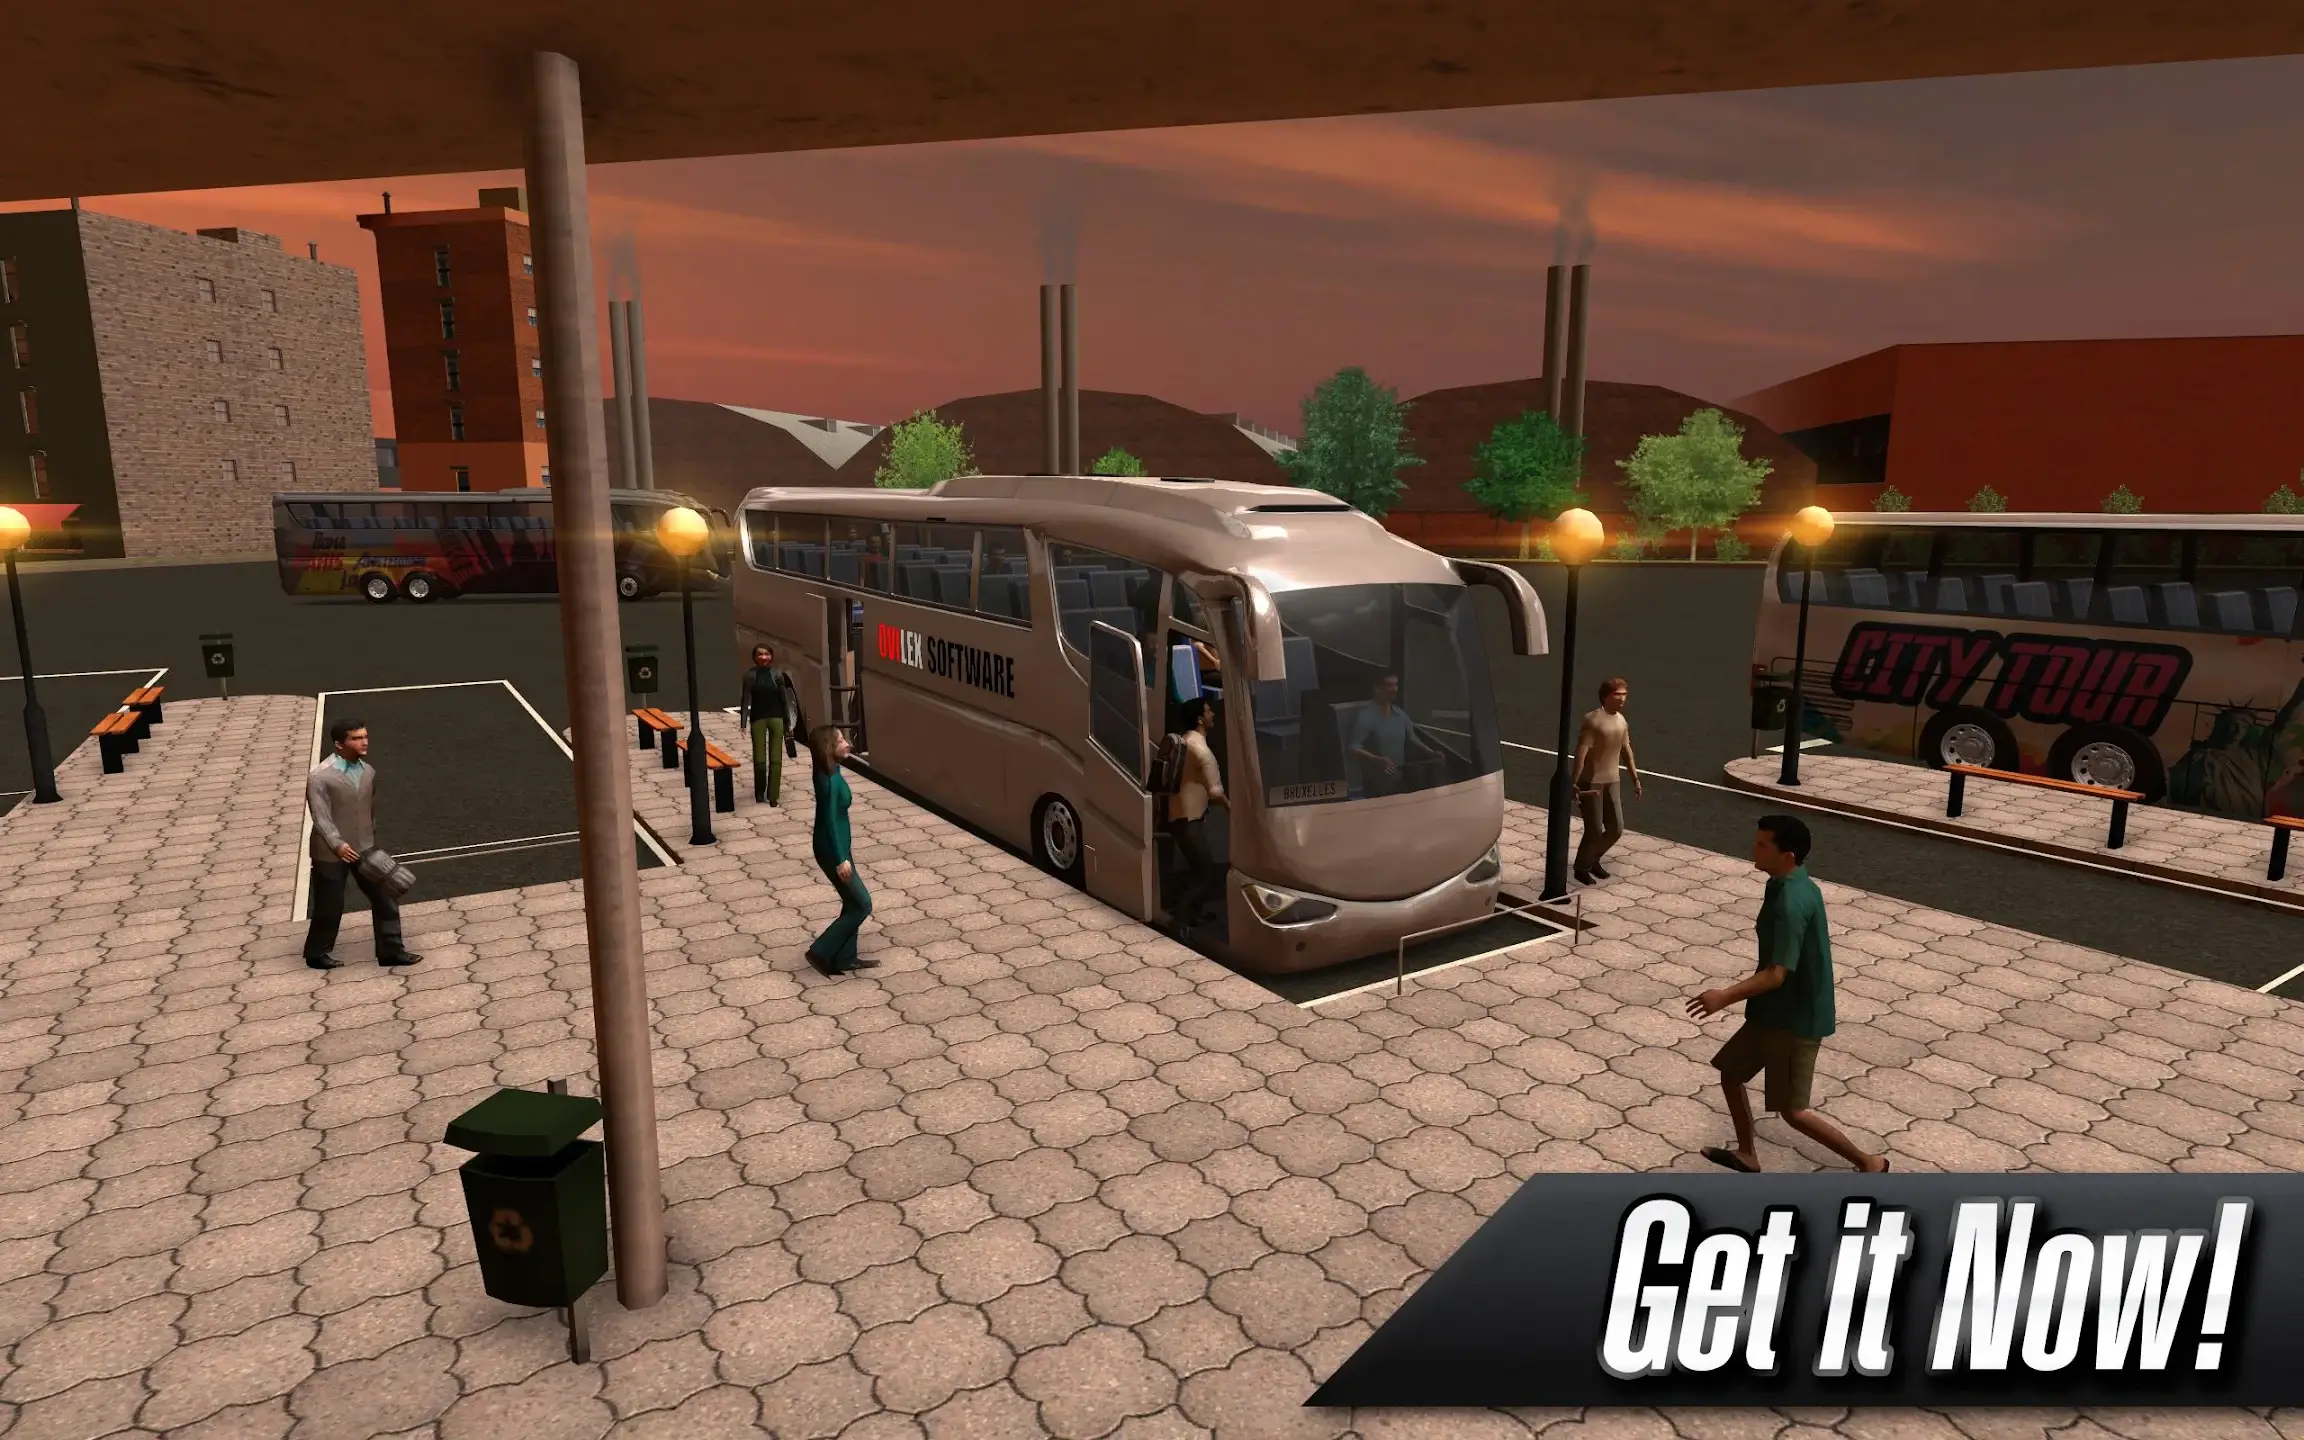 Coach Bus Simulator MOD APK